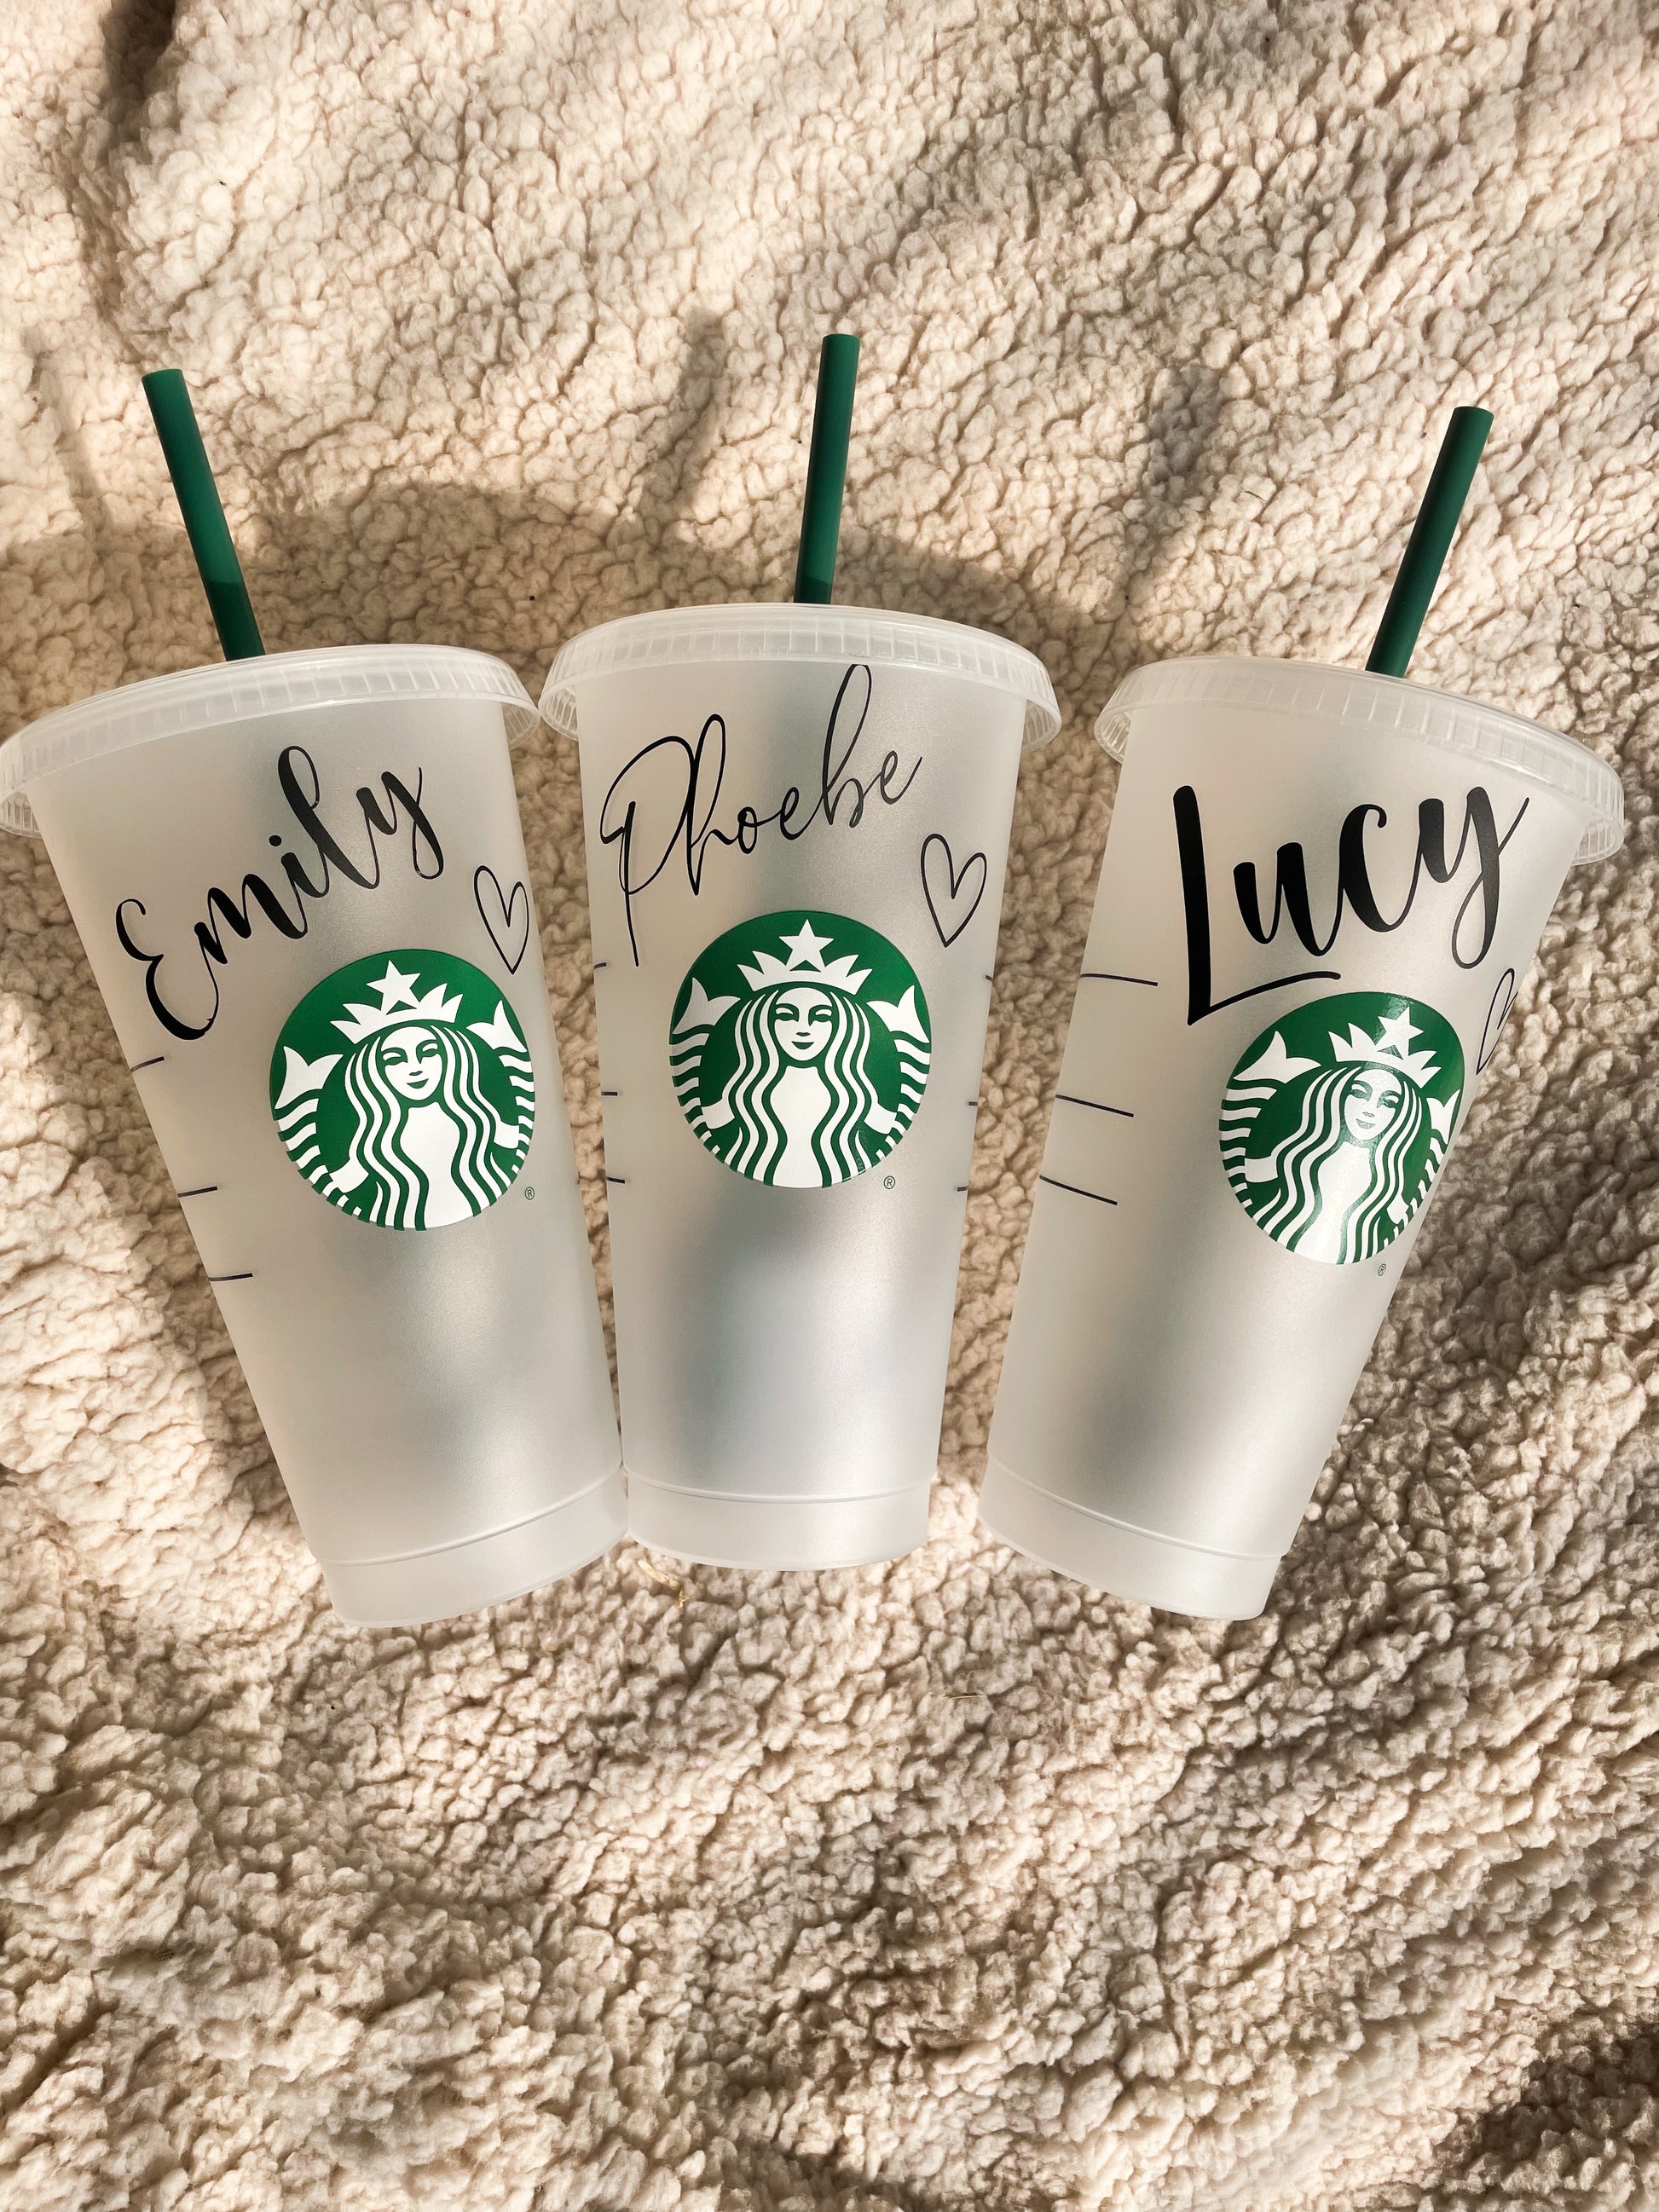 Matching reusable Starbucks cup set!